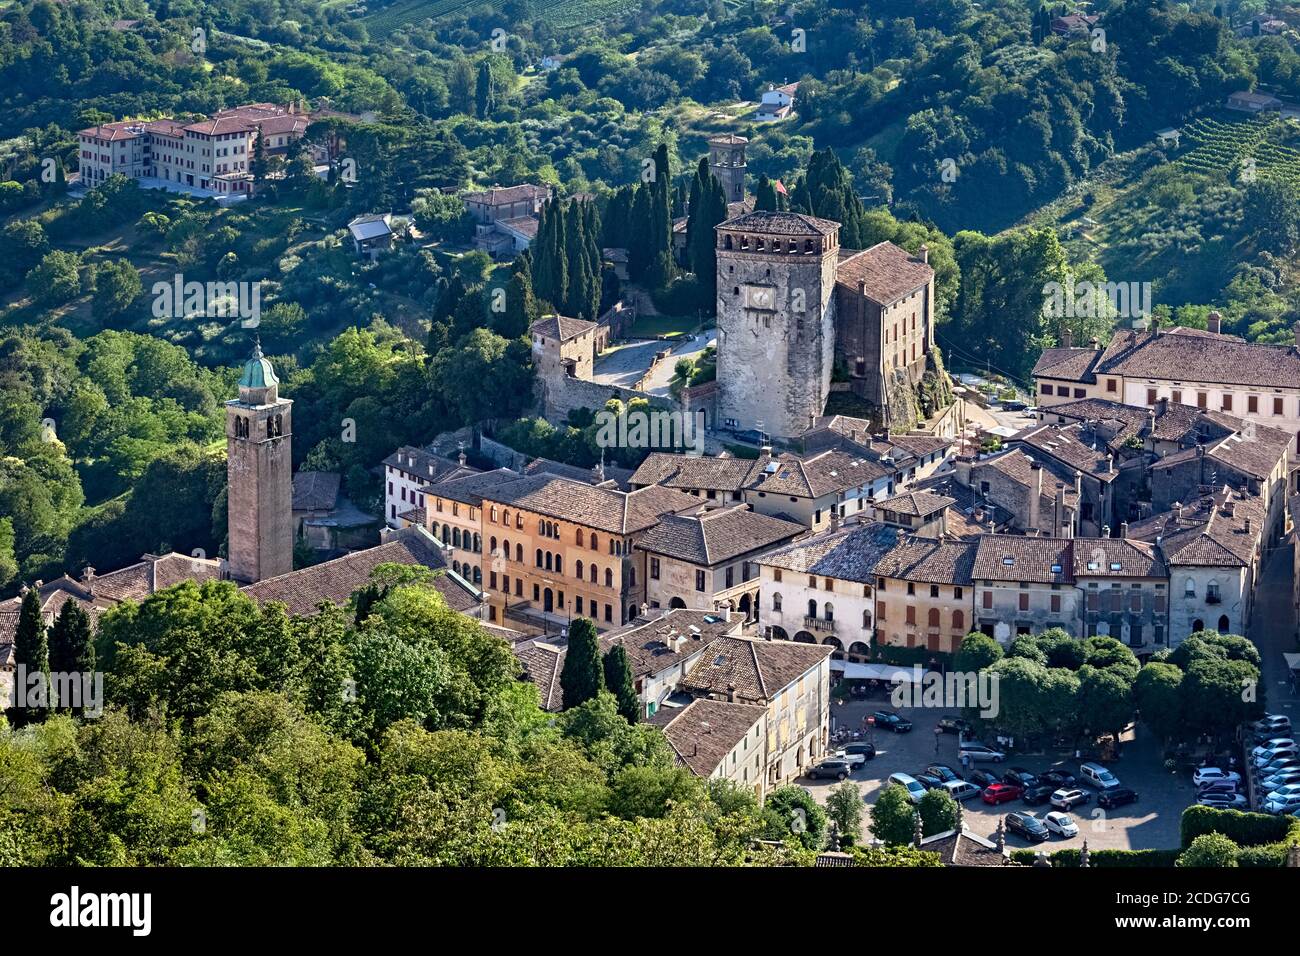 Das Dorf und die mittelalterliche Burg von Asolo. Provinz Treviso, Venetien, Italien, Europa. Stockfoto